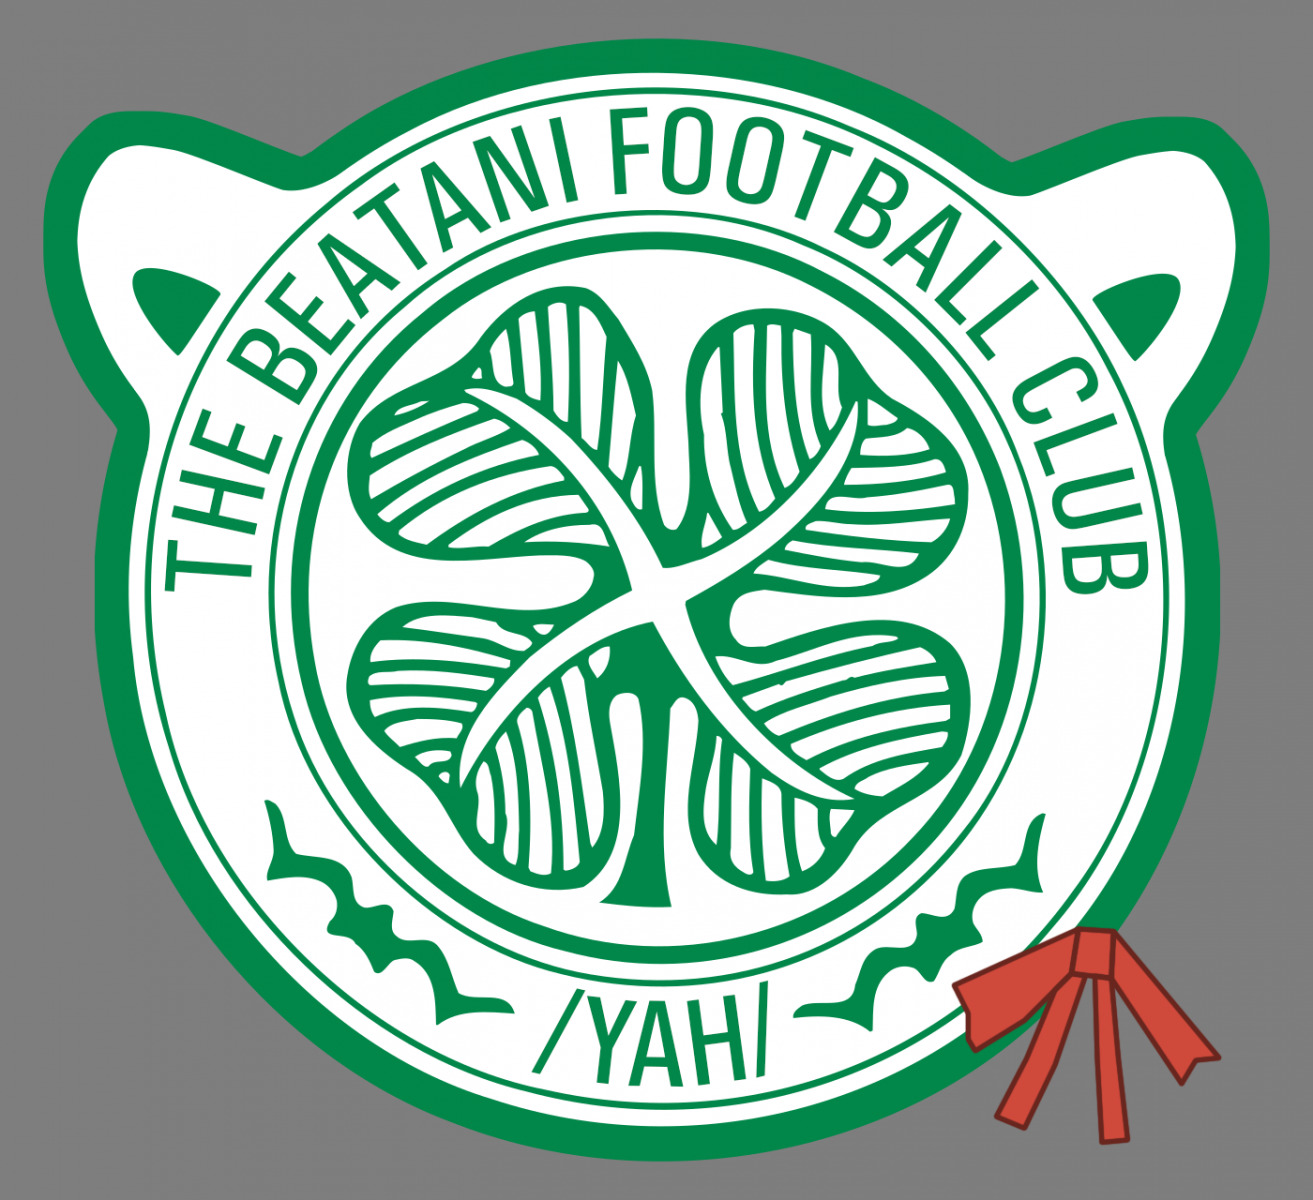 beatani clover divegrass football logo soccer yah